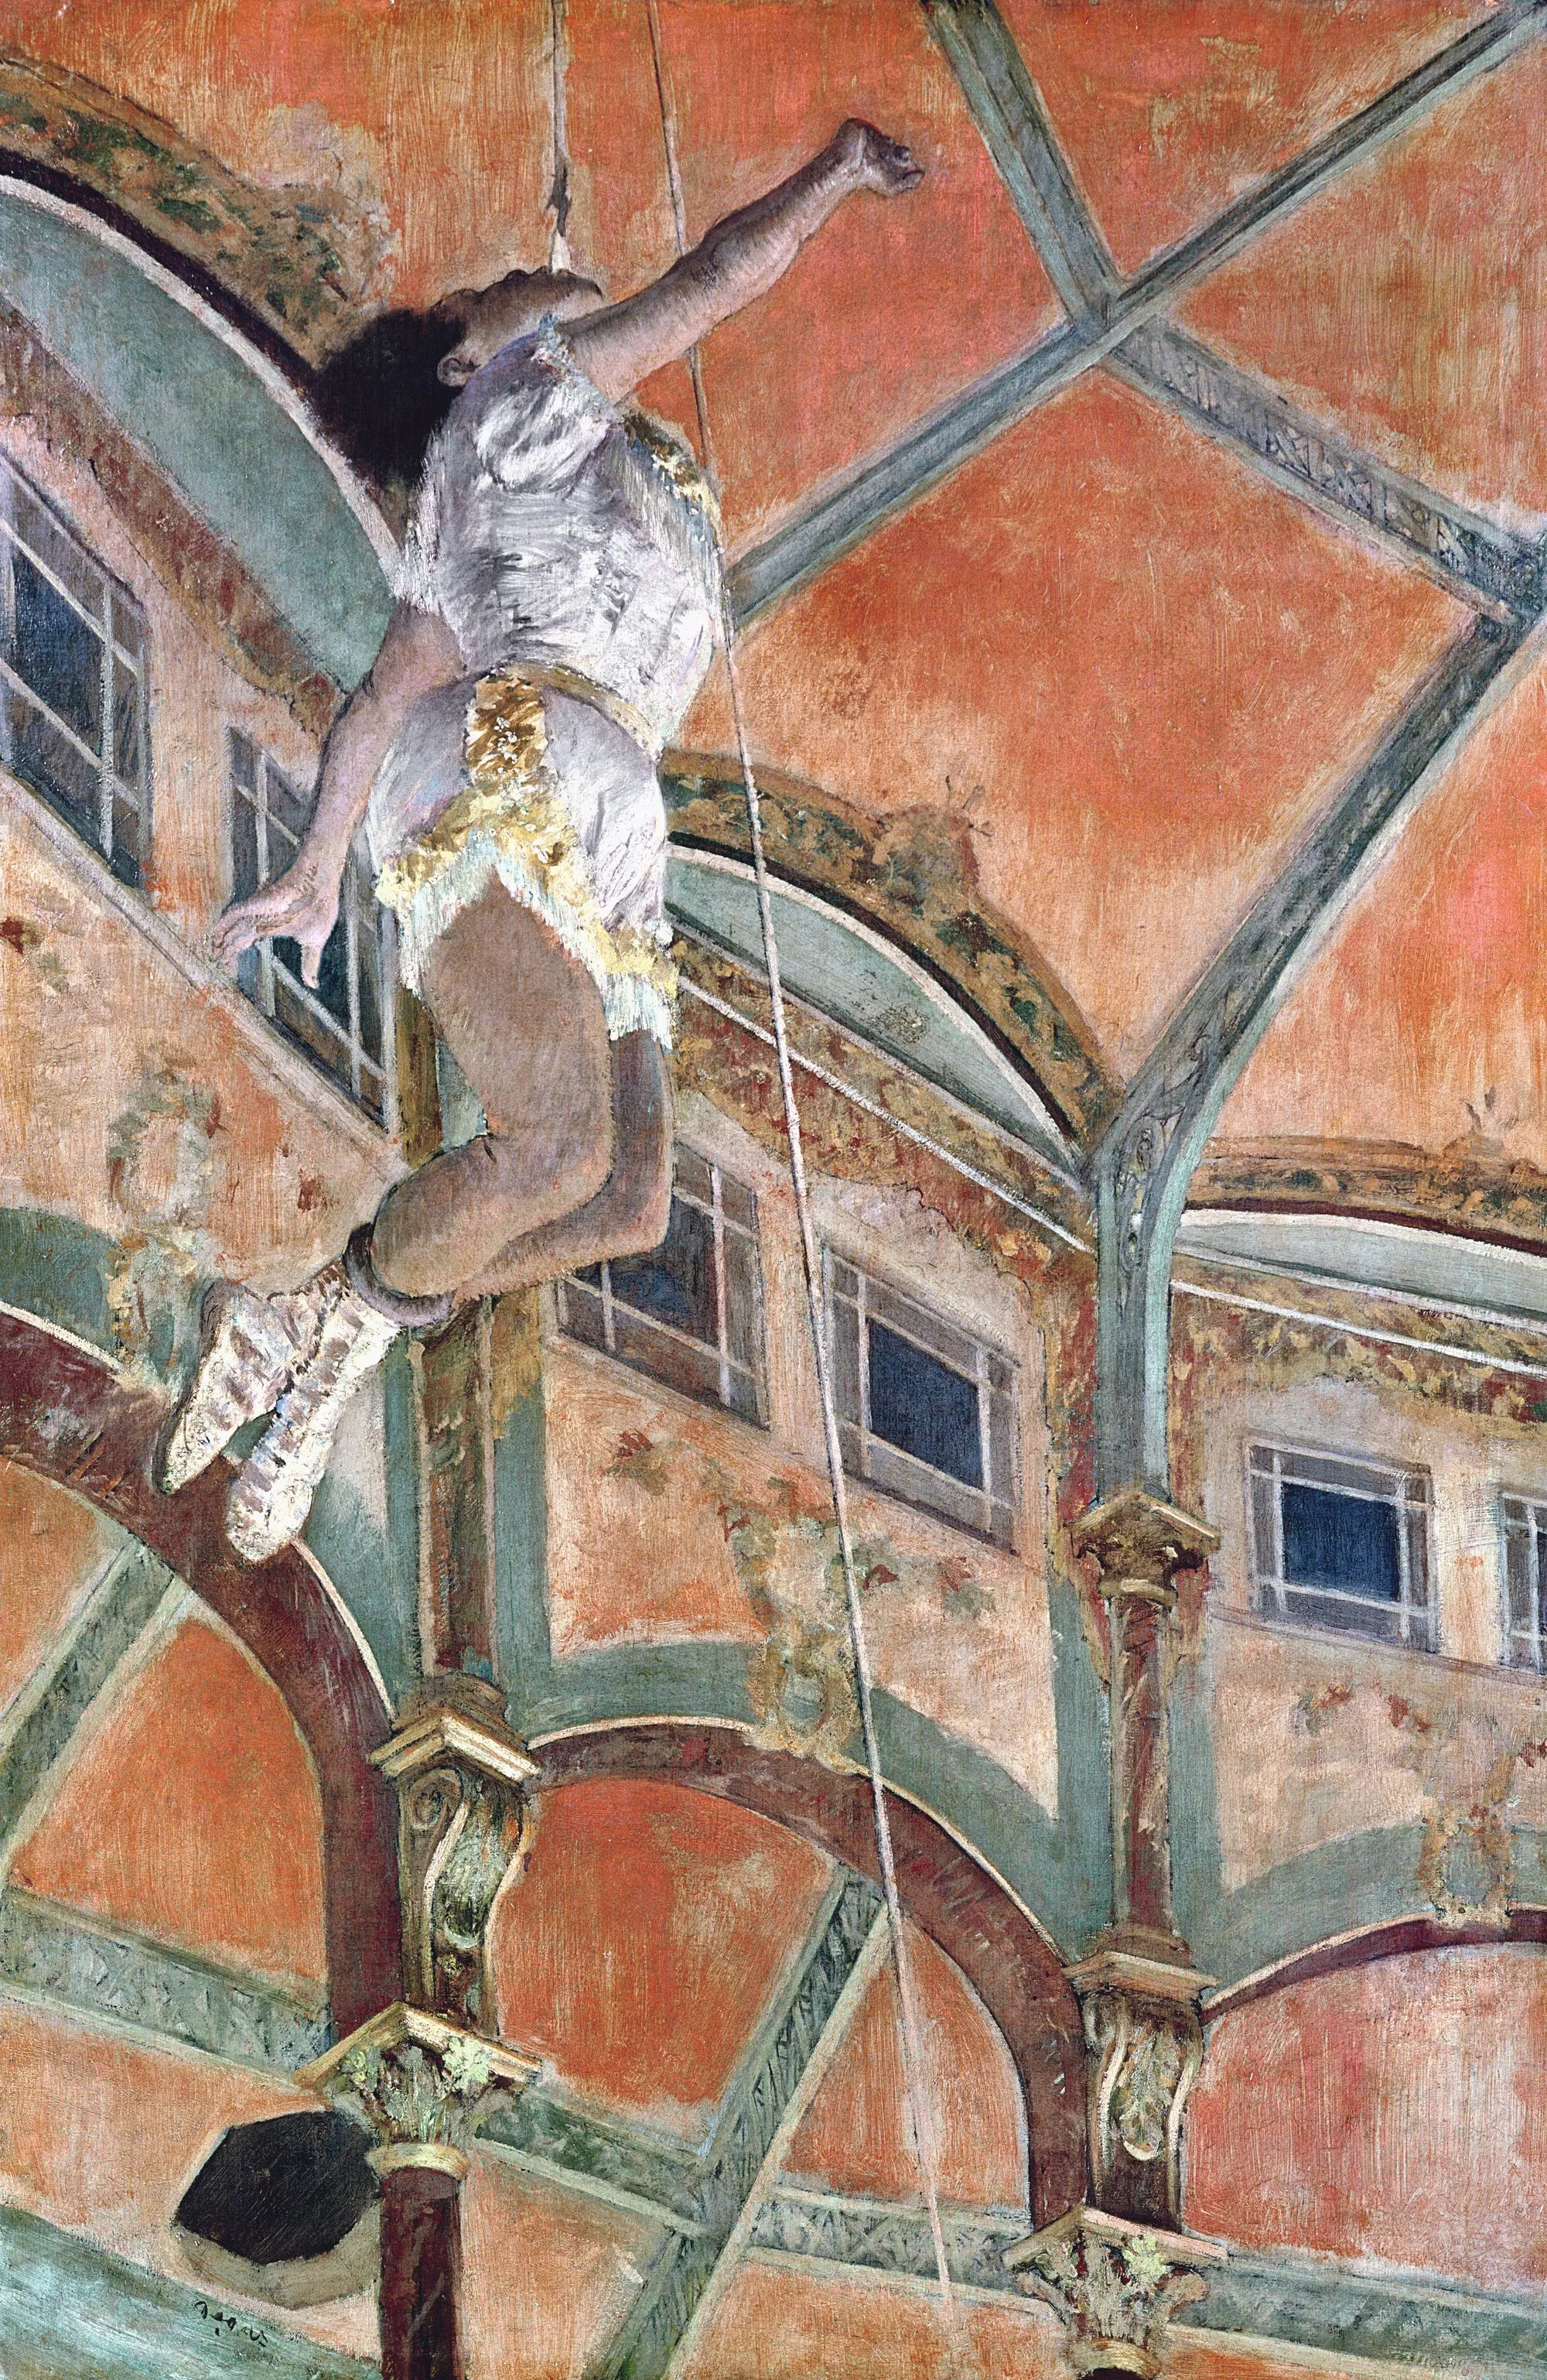 Mademoiselle Lala au cirque Fernando, Edgar Degas, 1879.